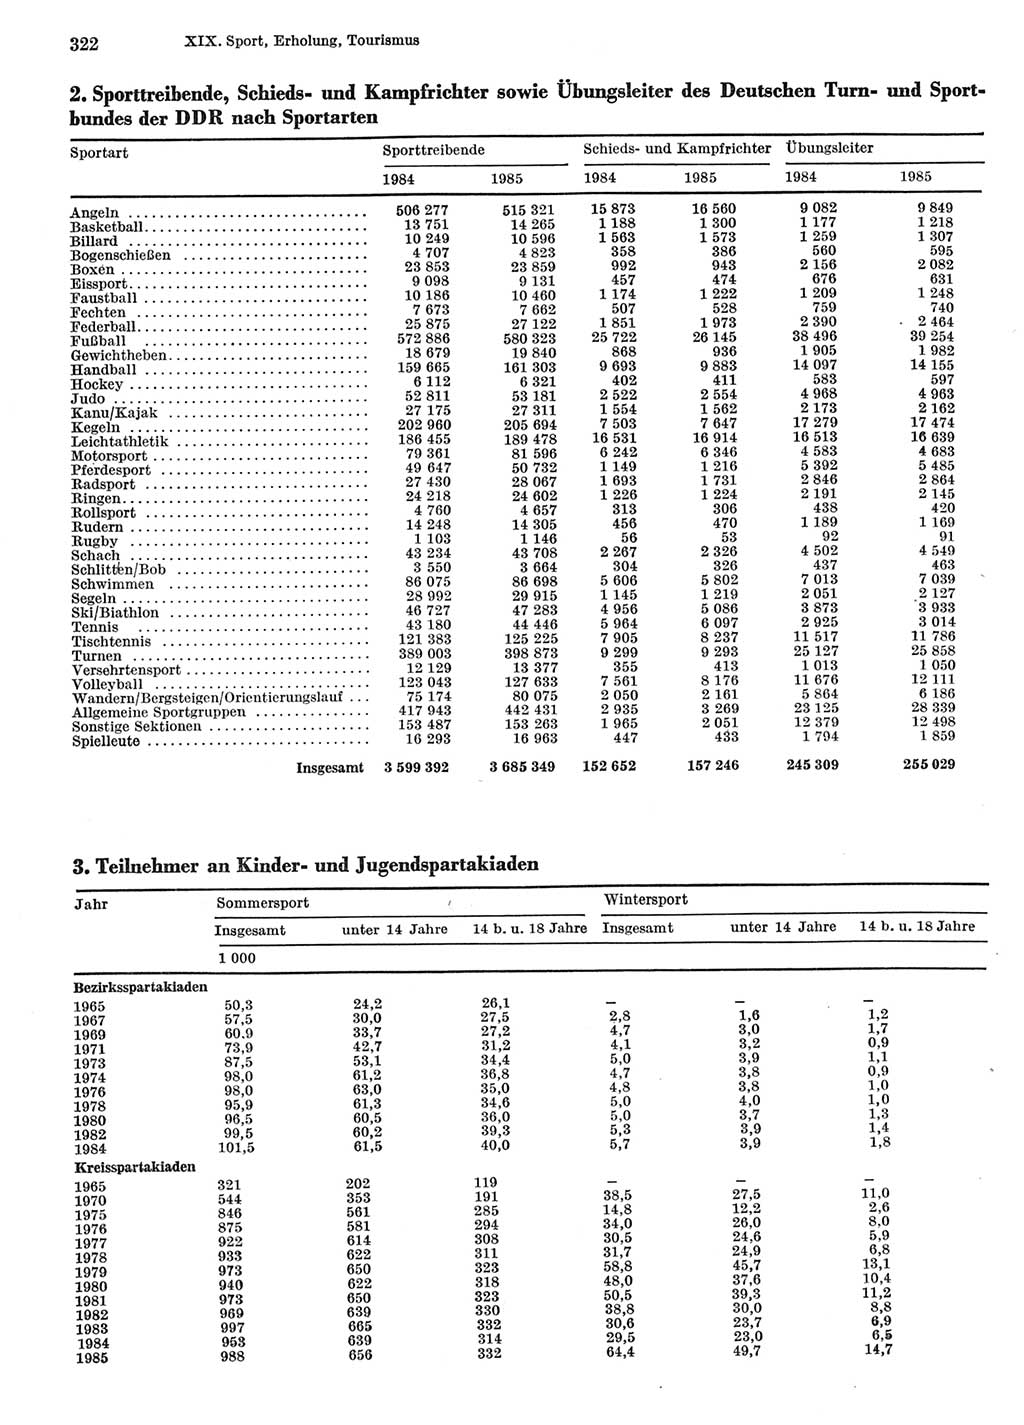 Statistisches Jahrbuch der Deutschen Demokratischen Republik (DDR) 1986, Seite 322 (Stat. Jb. DDR 1986, S. 322)